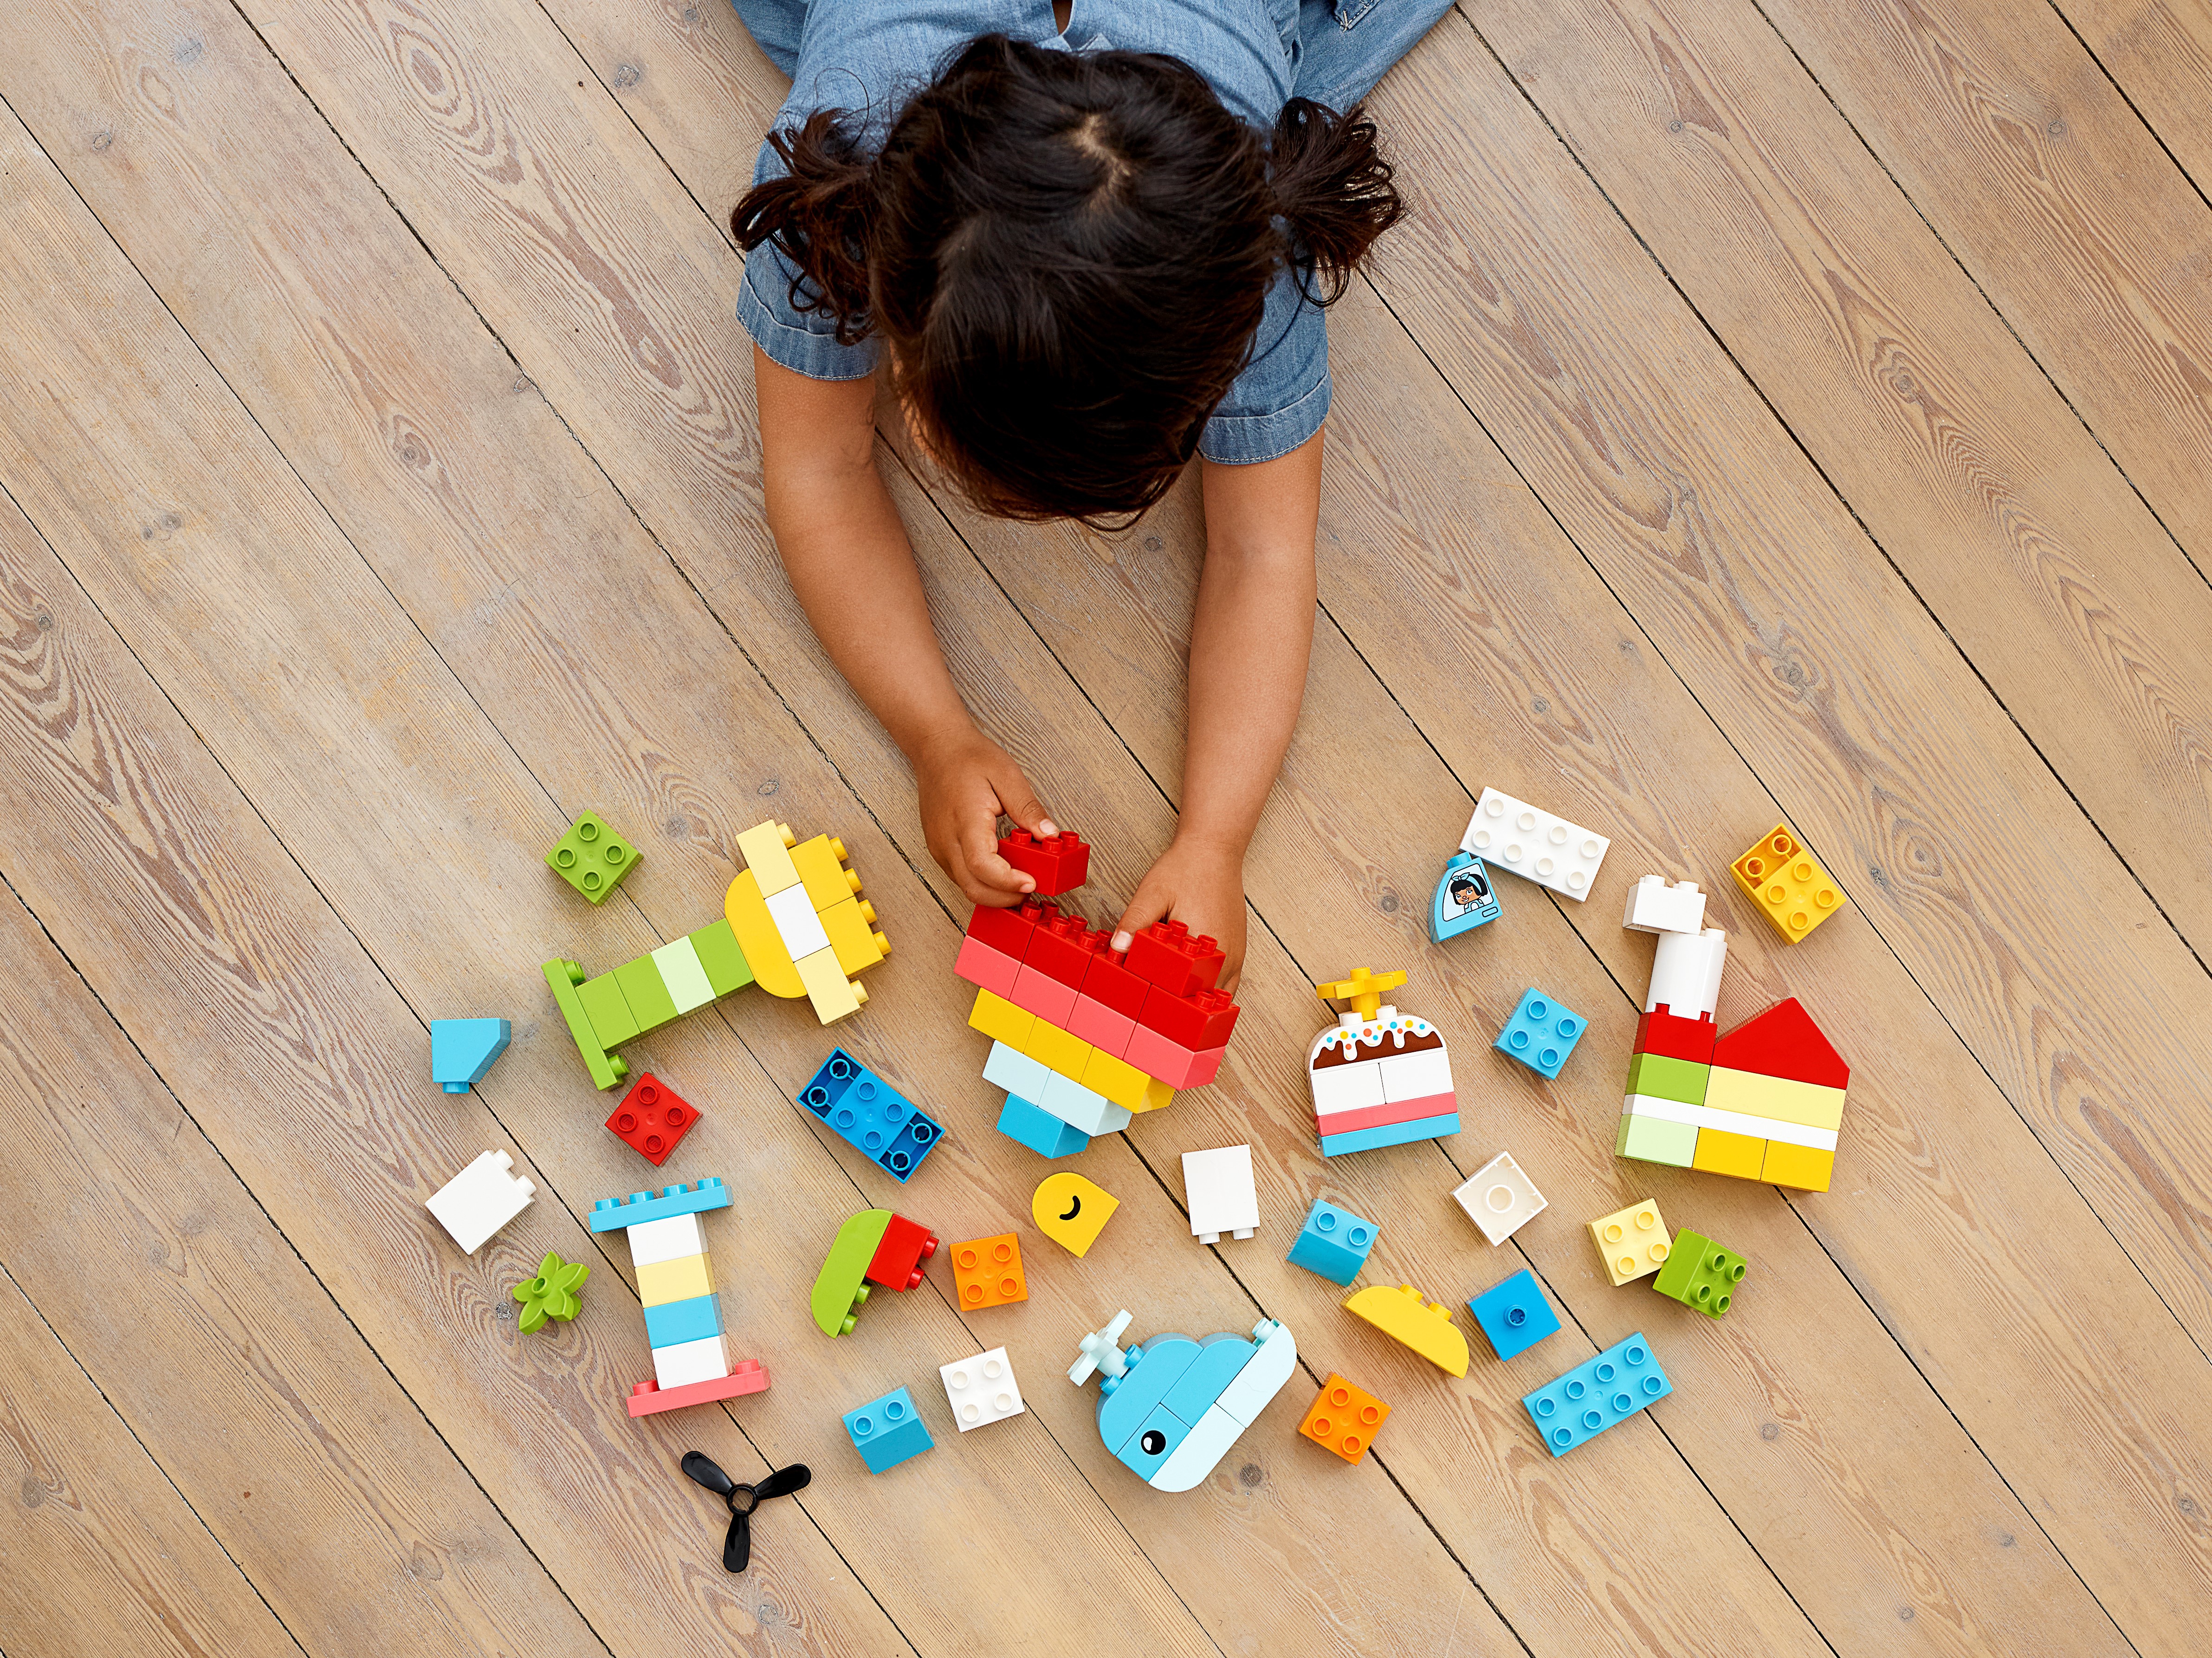 LEGO coeur duplo LEGO : la boîte à Prix Carrefour